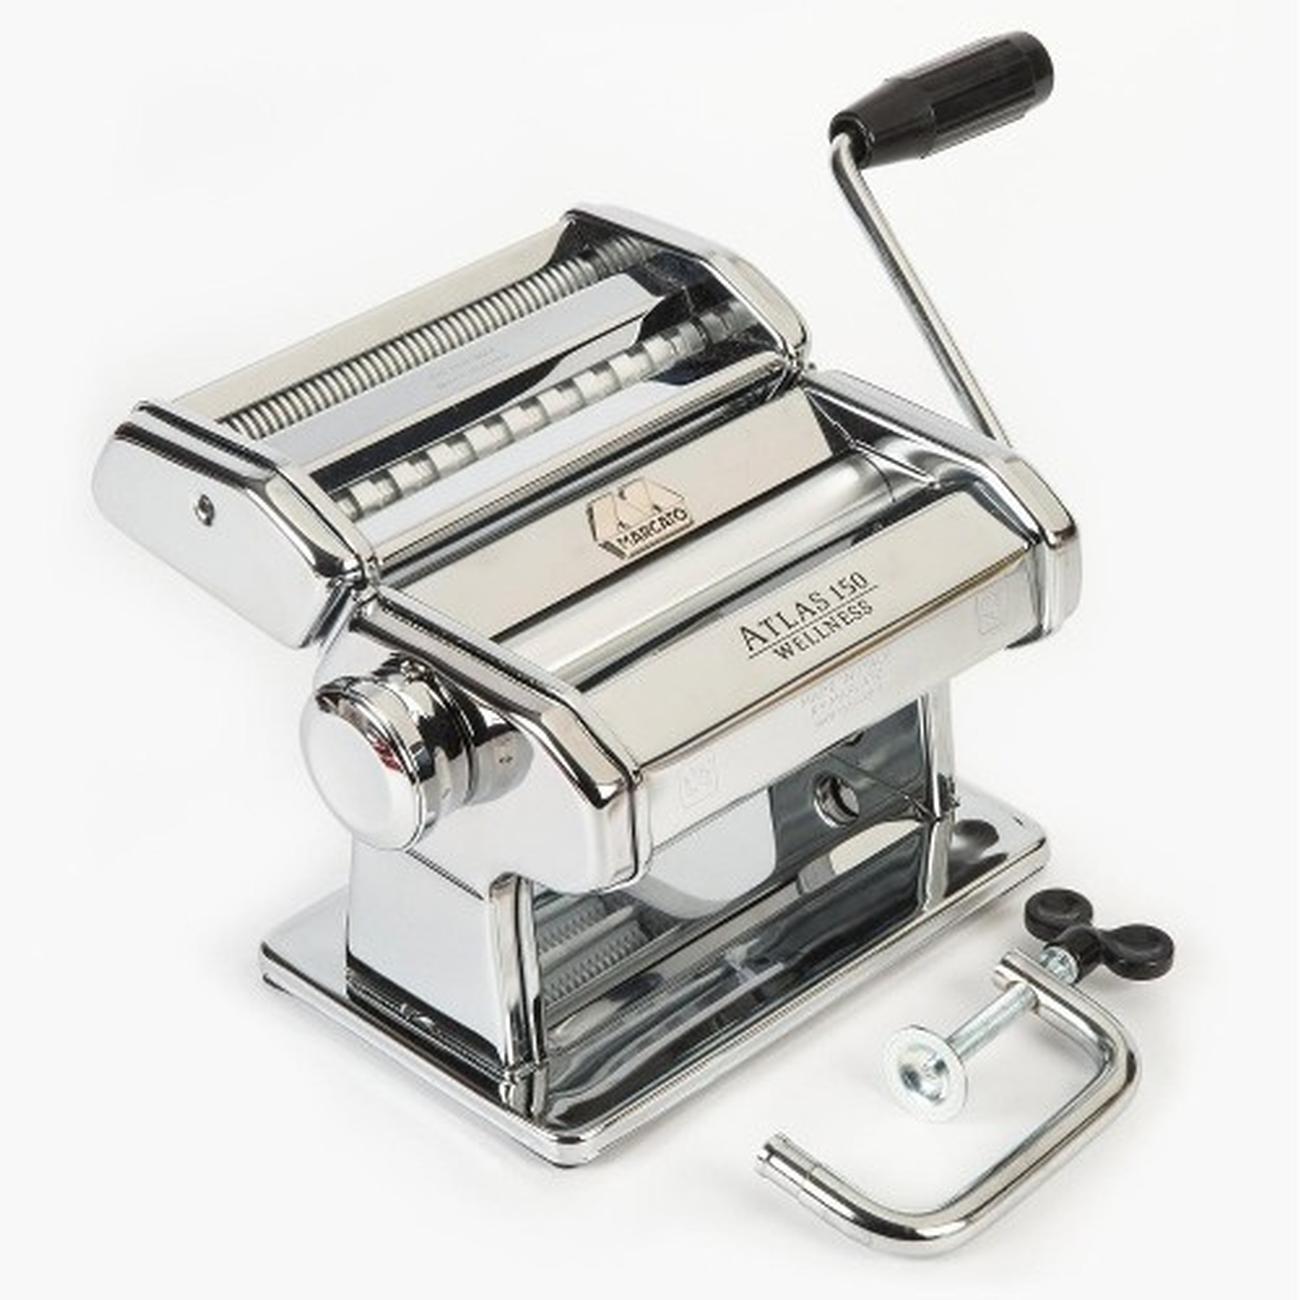 Marcato Pasta Machine - Accessories Compatible (Atlas 150 Design